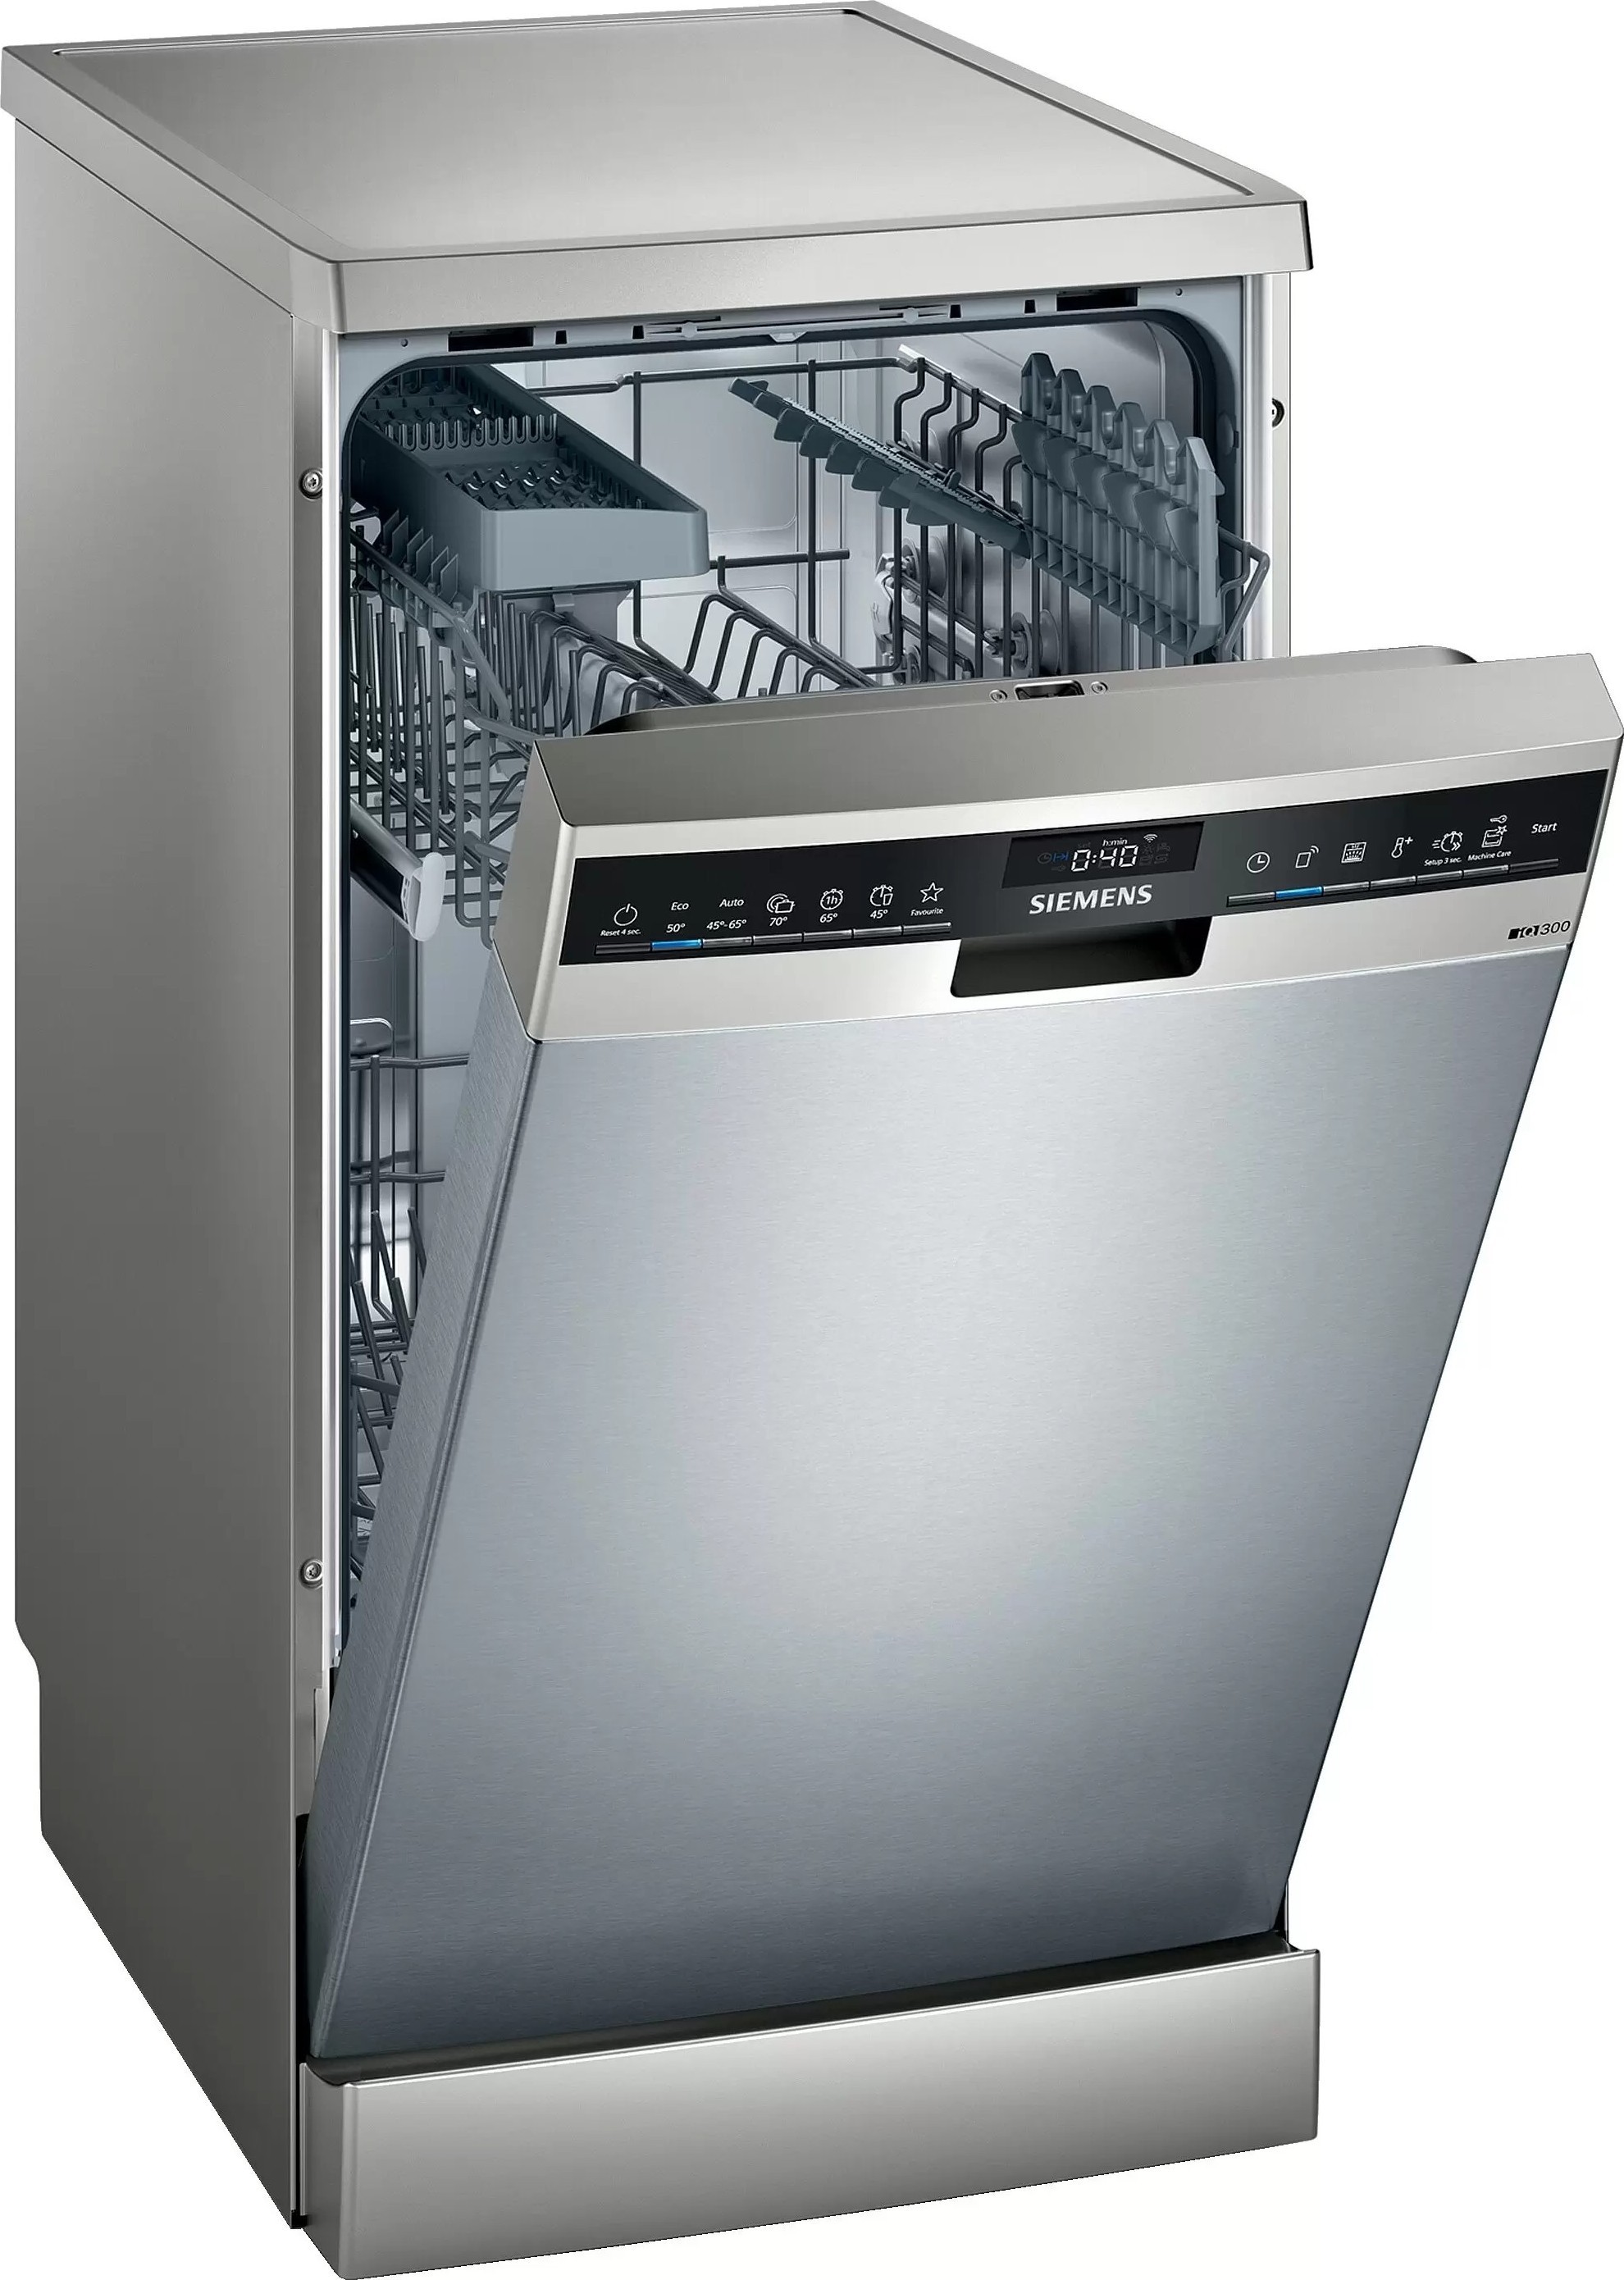 Посудомоечная машина электронная. Посудомоечная машина Siemens SR 25m884. Посудомоечная машина Siemens iq500 SR 256i00 te. Посудомоечная машина Siemens SR 25e207. Посудомоечная машина Siemens SF 24e234.